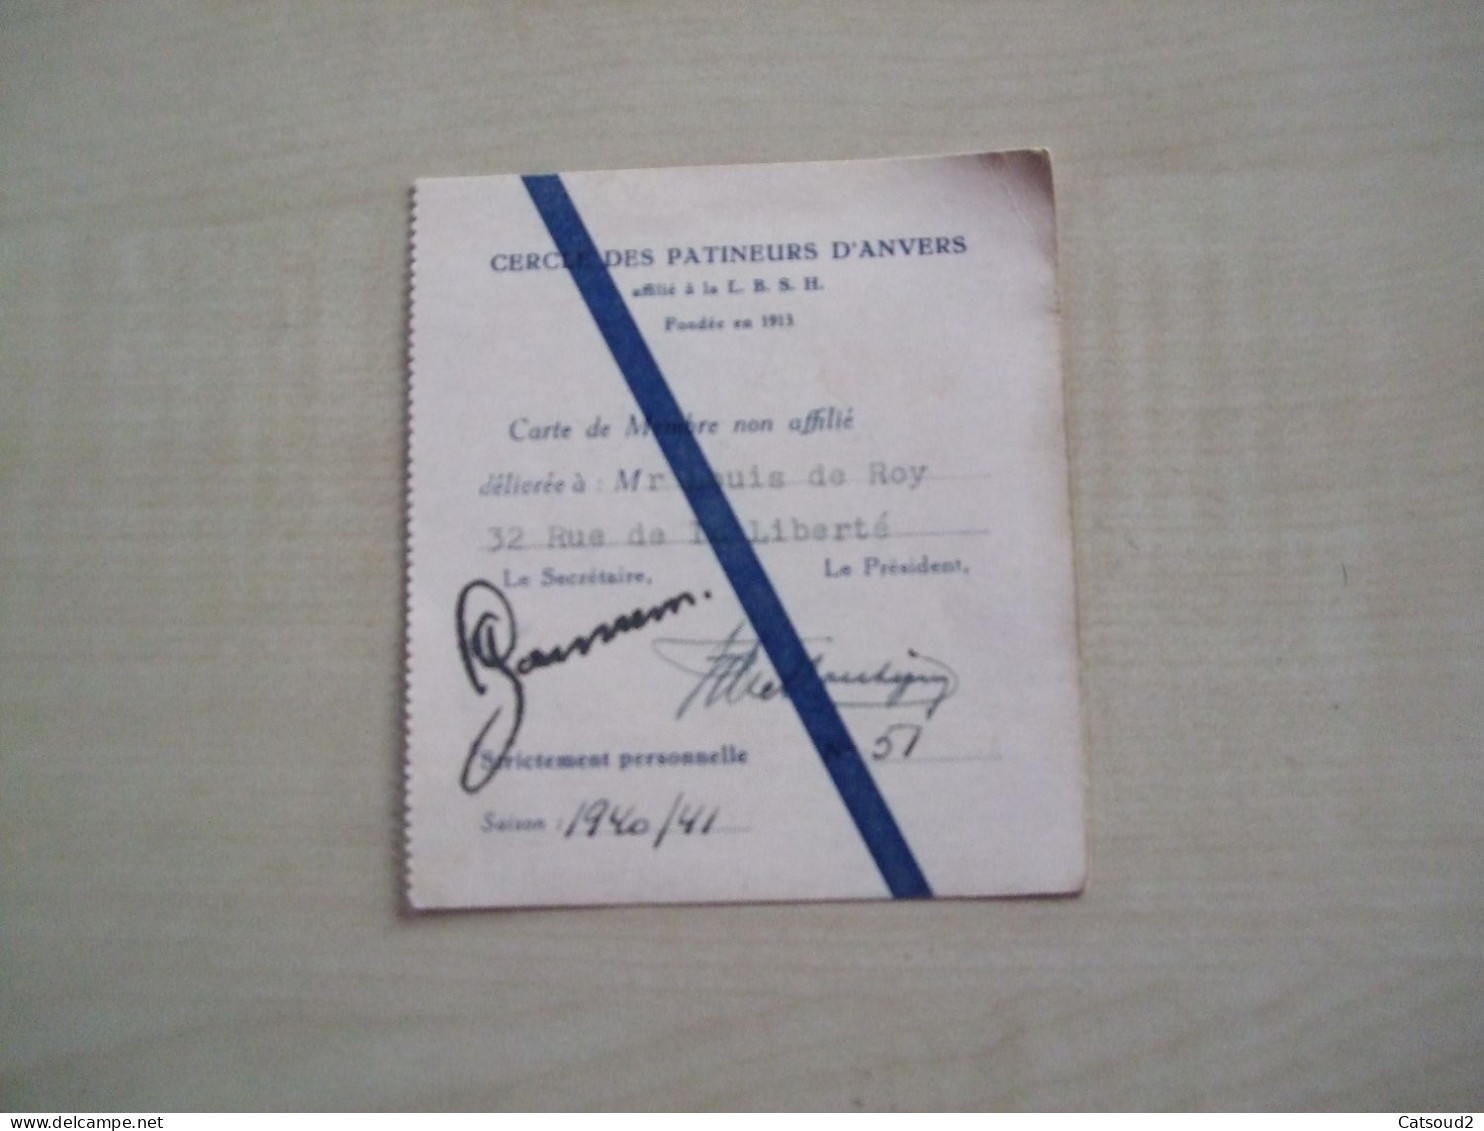 Carte De Membre Ancienne 1940/41 CERCLE DES PATINEURS D'ANVERS - Tarjetas De Membresía